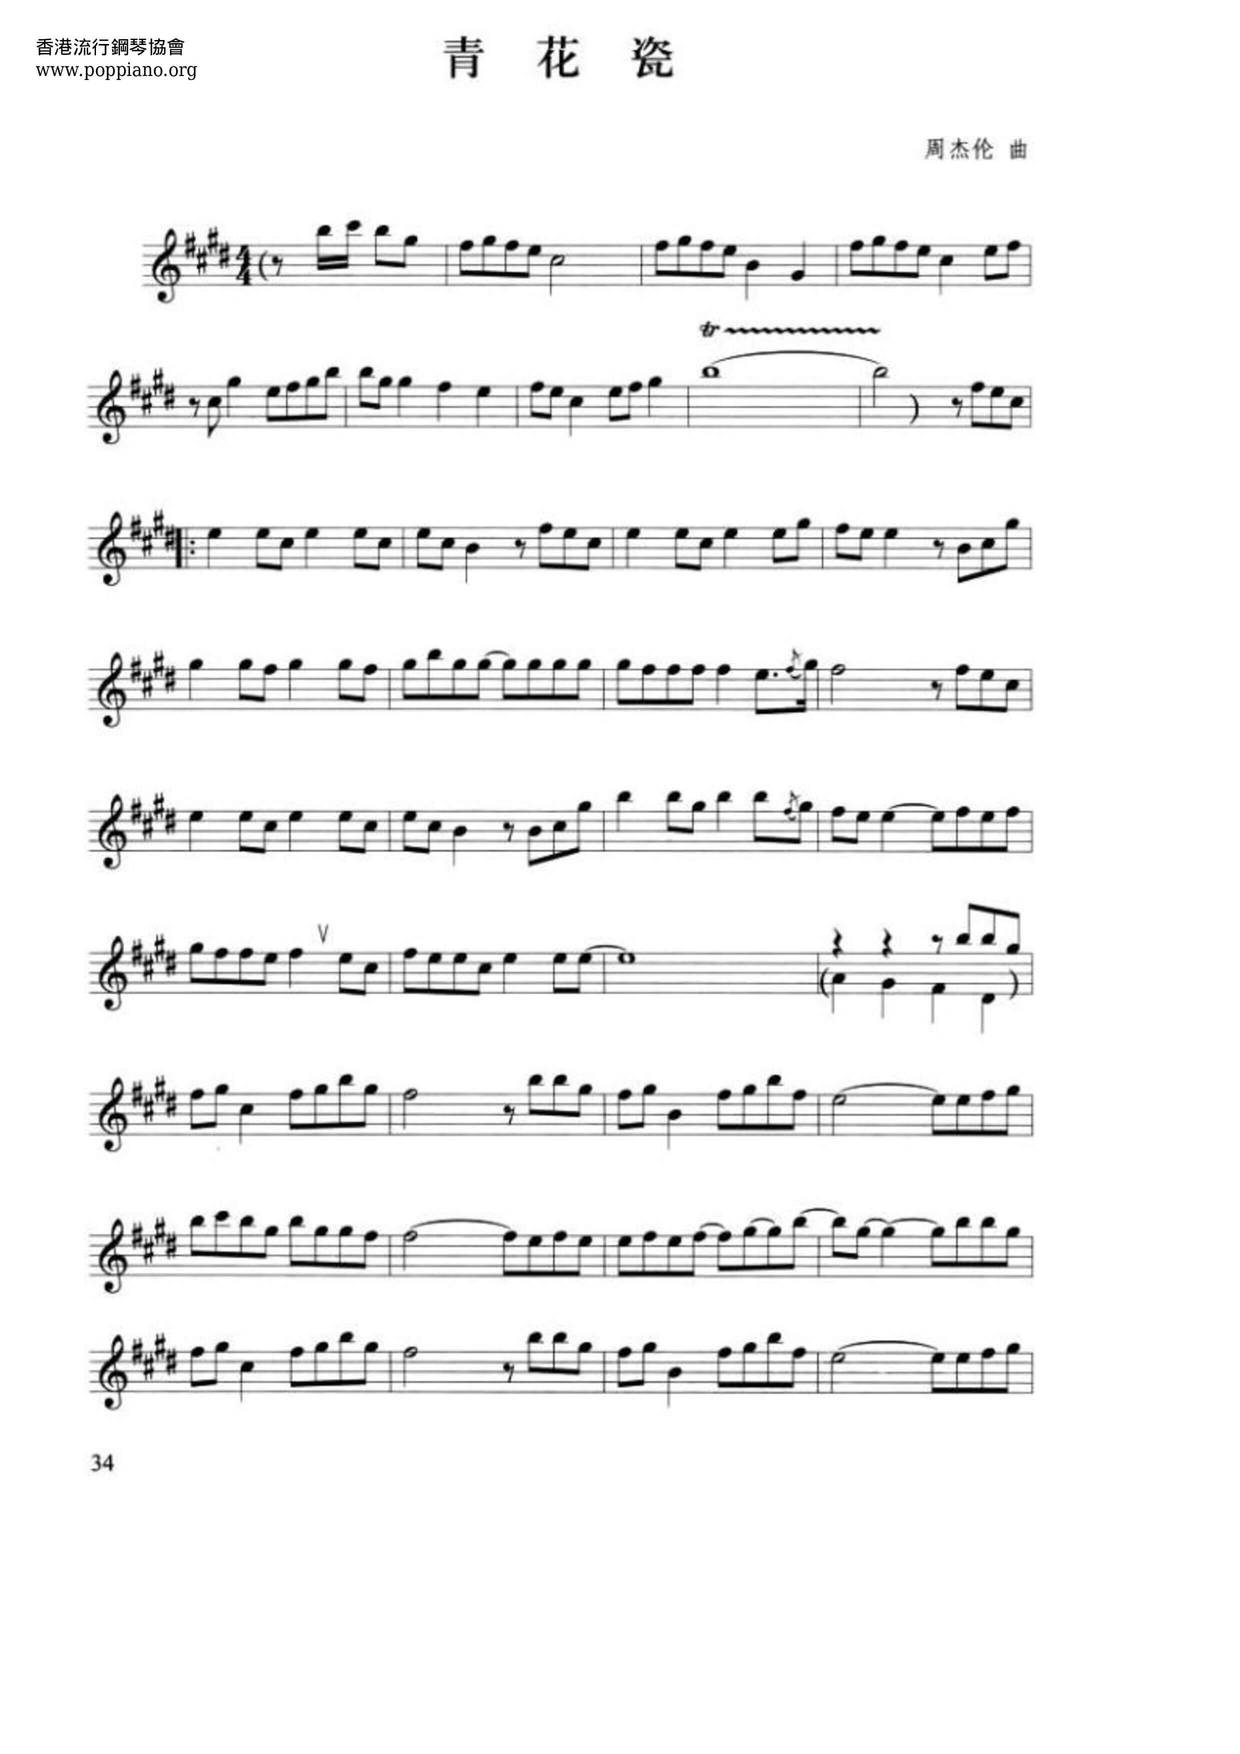 周杰伦 青花瓷小提琴谱pdf 香港流行钢琴协会琴谱下载